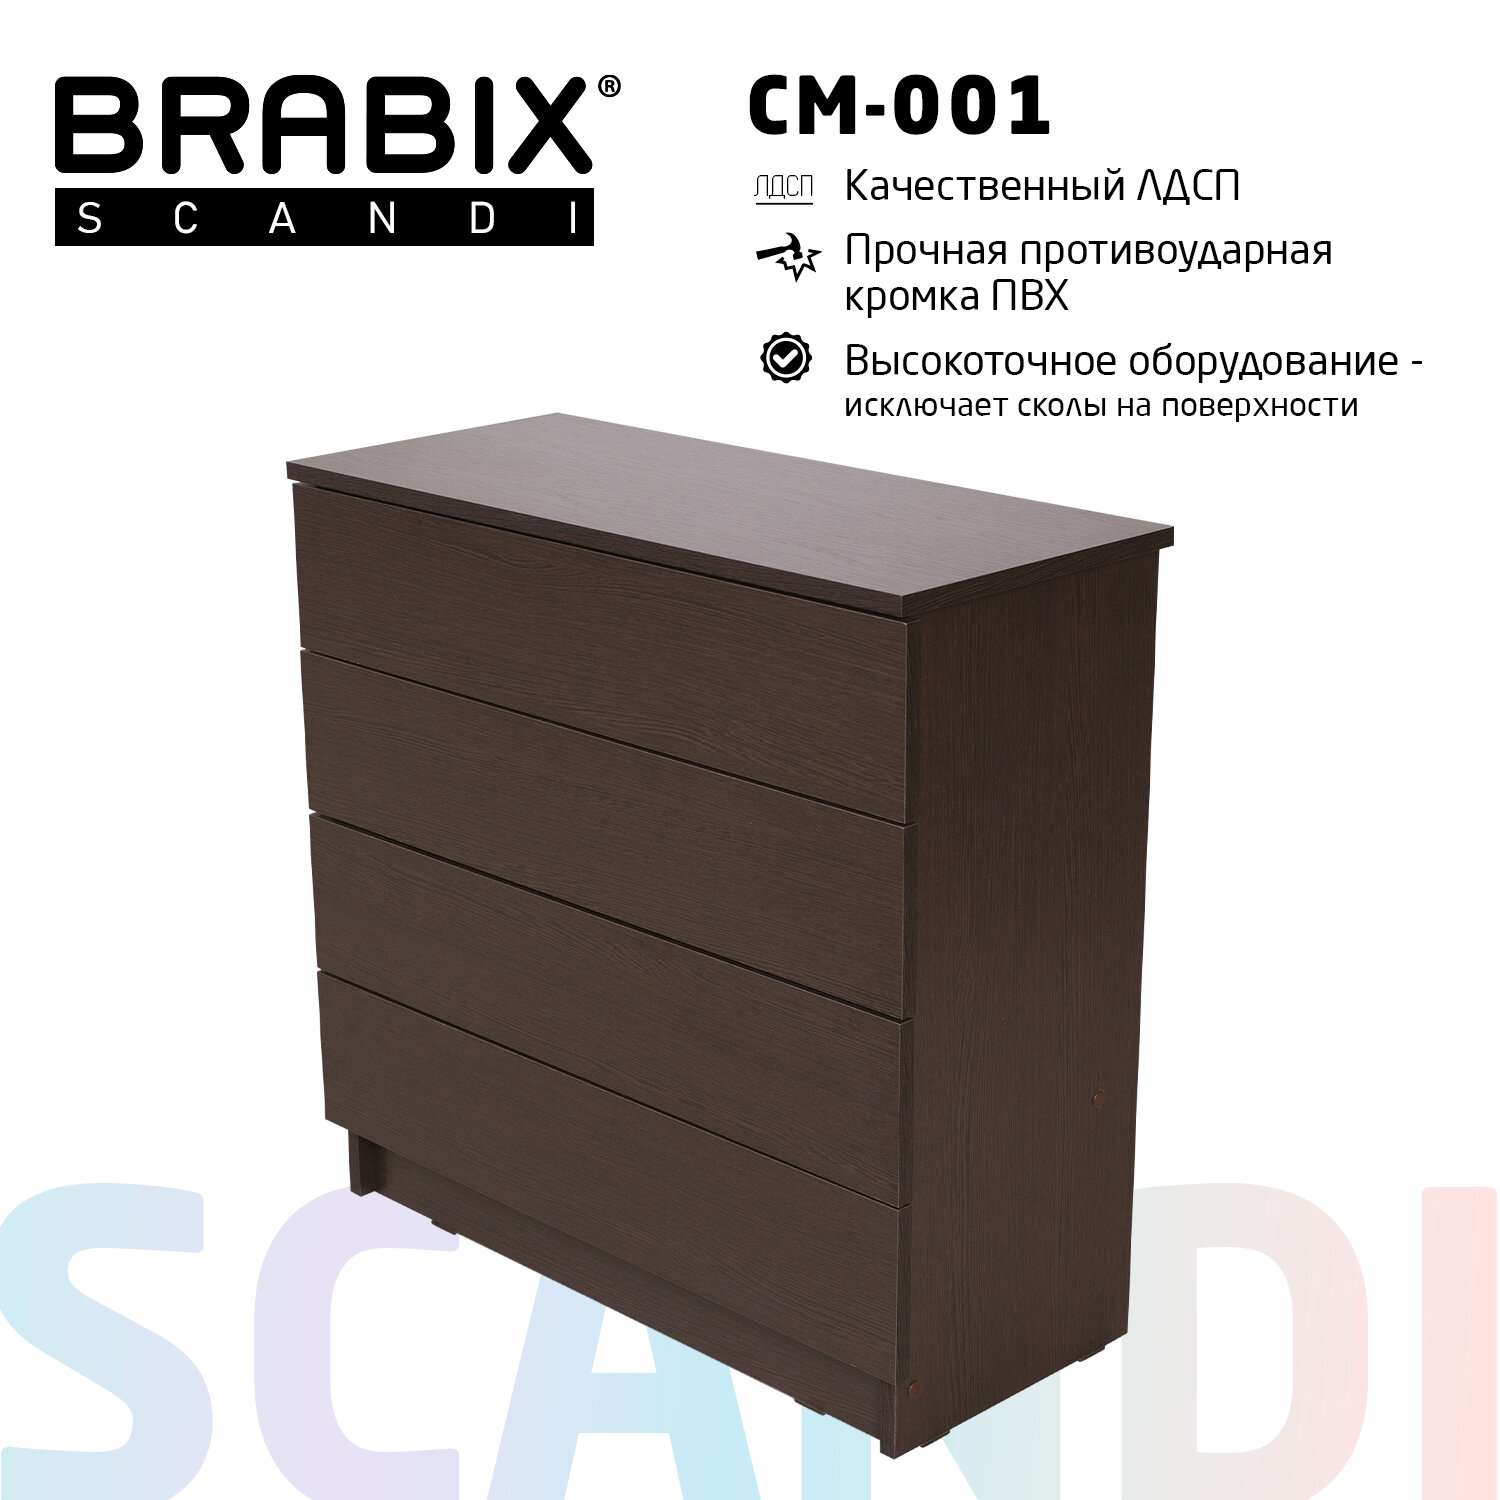 Комод Brabix деревянный для хранения вещей 4 ящика - фото 2